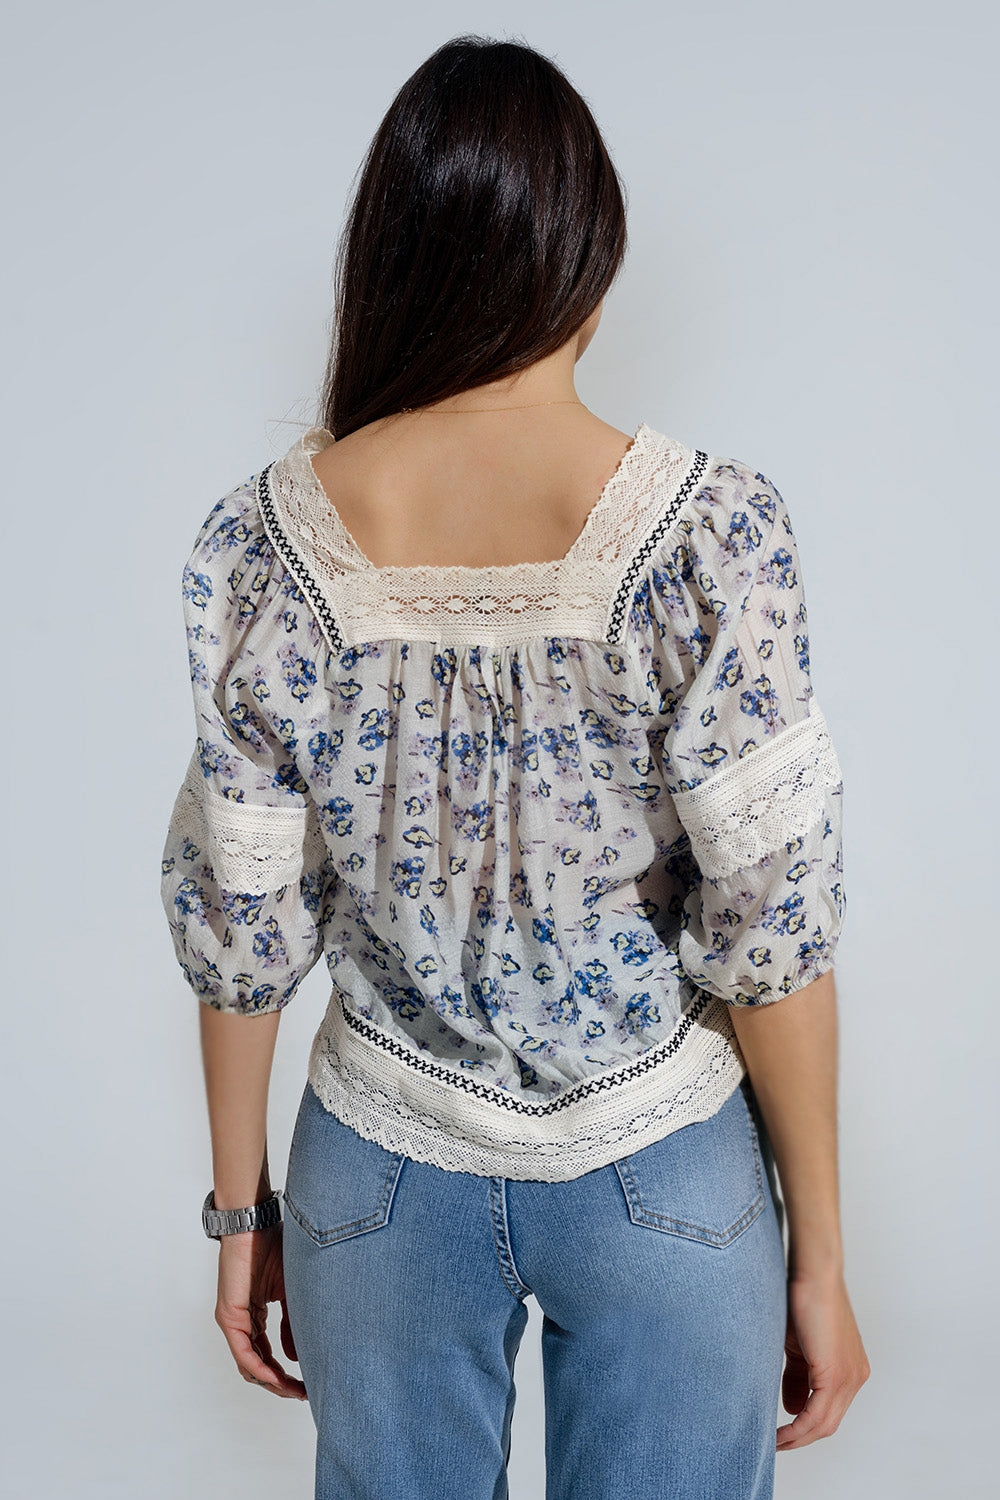 romantische blouse met bloemen en kanten detail